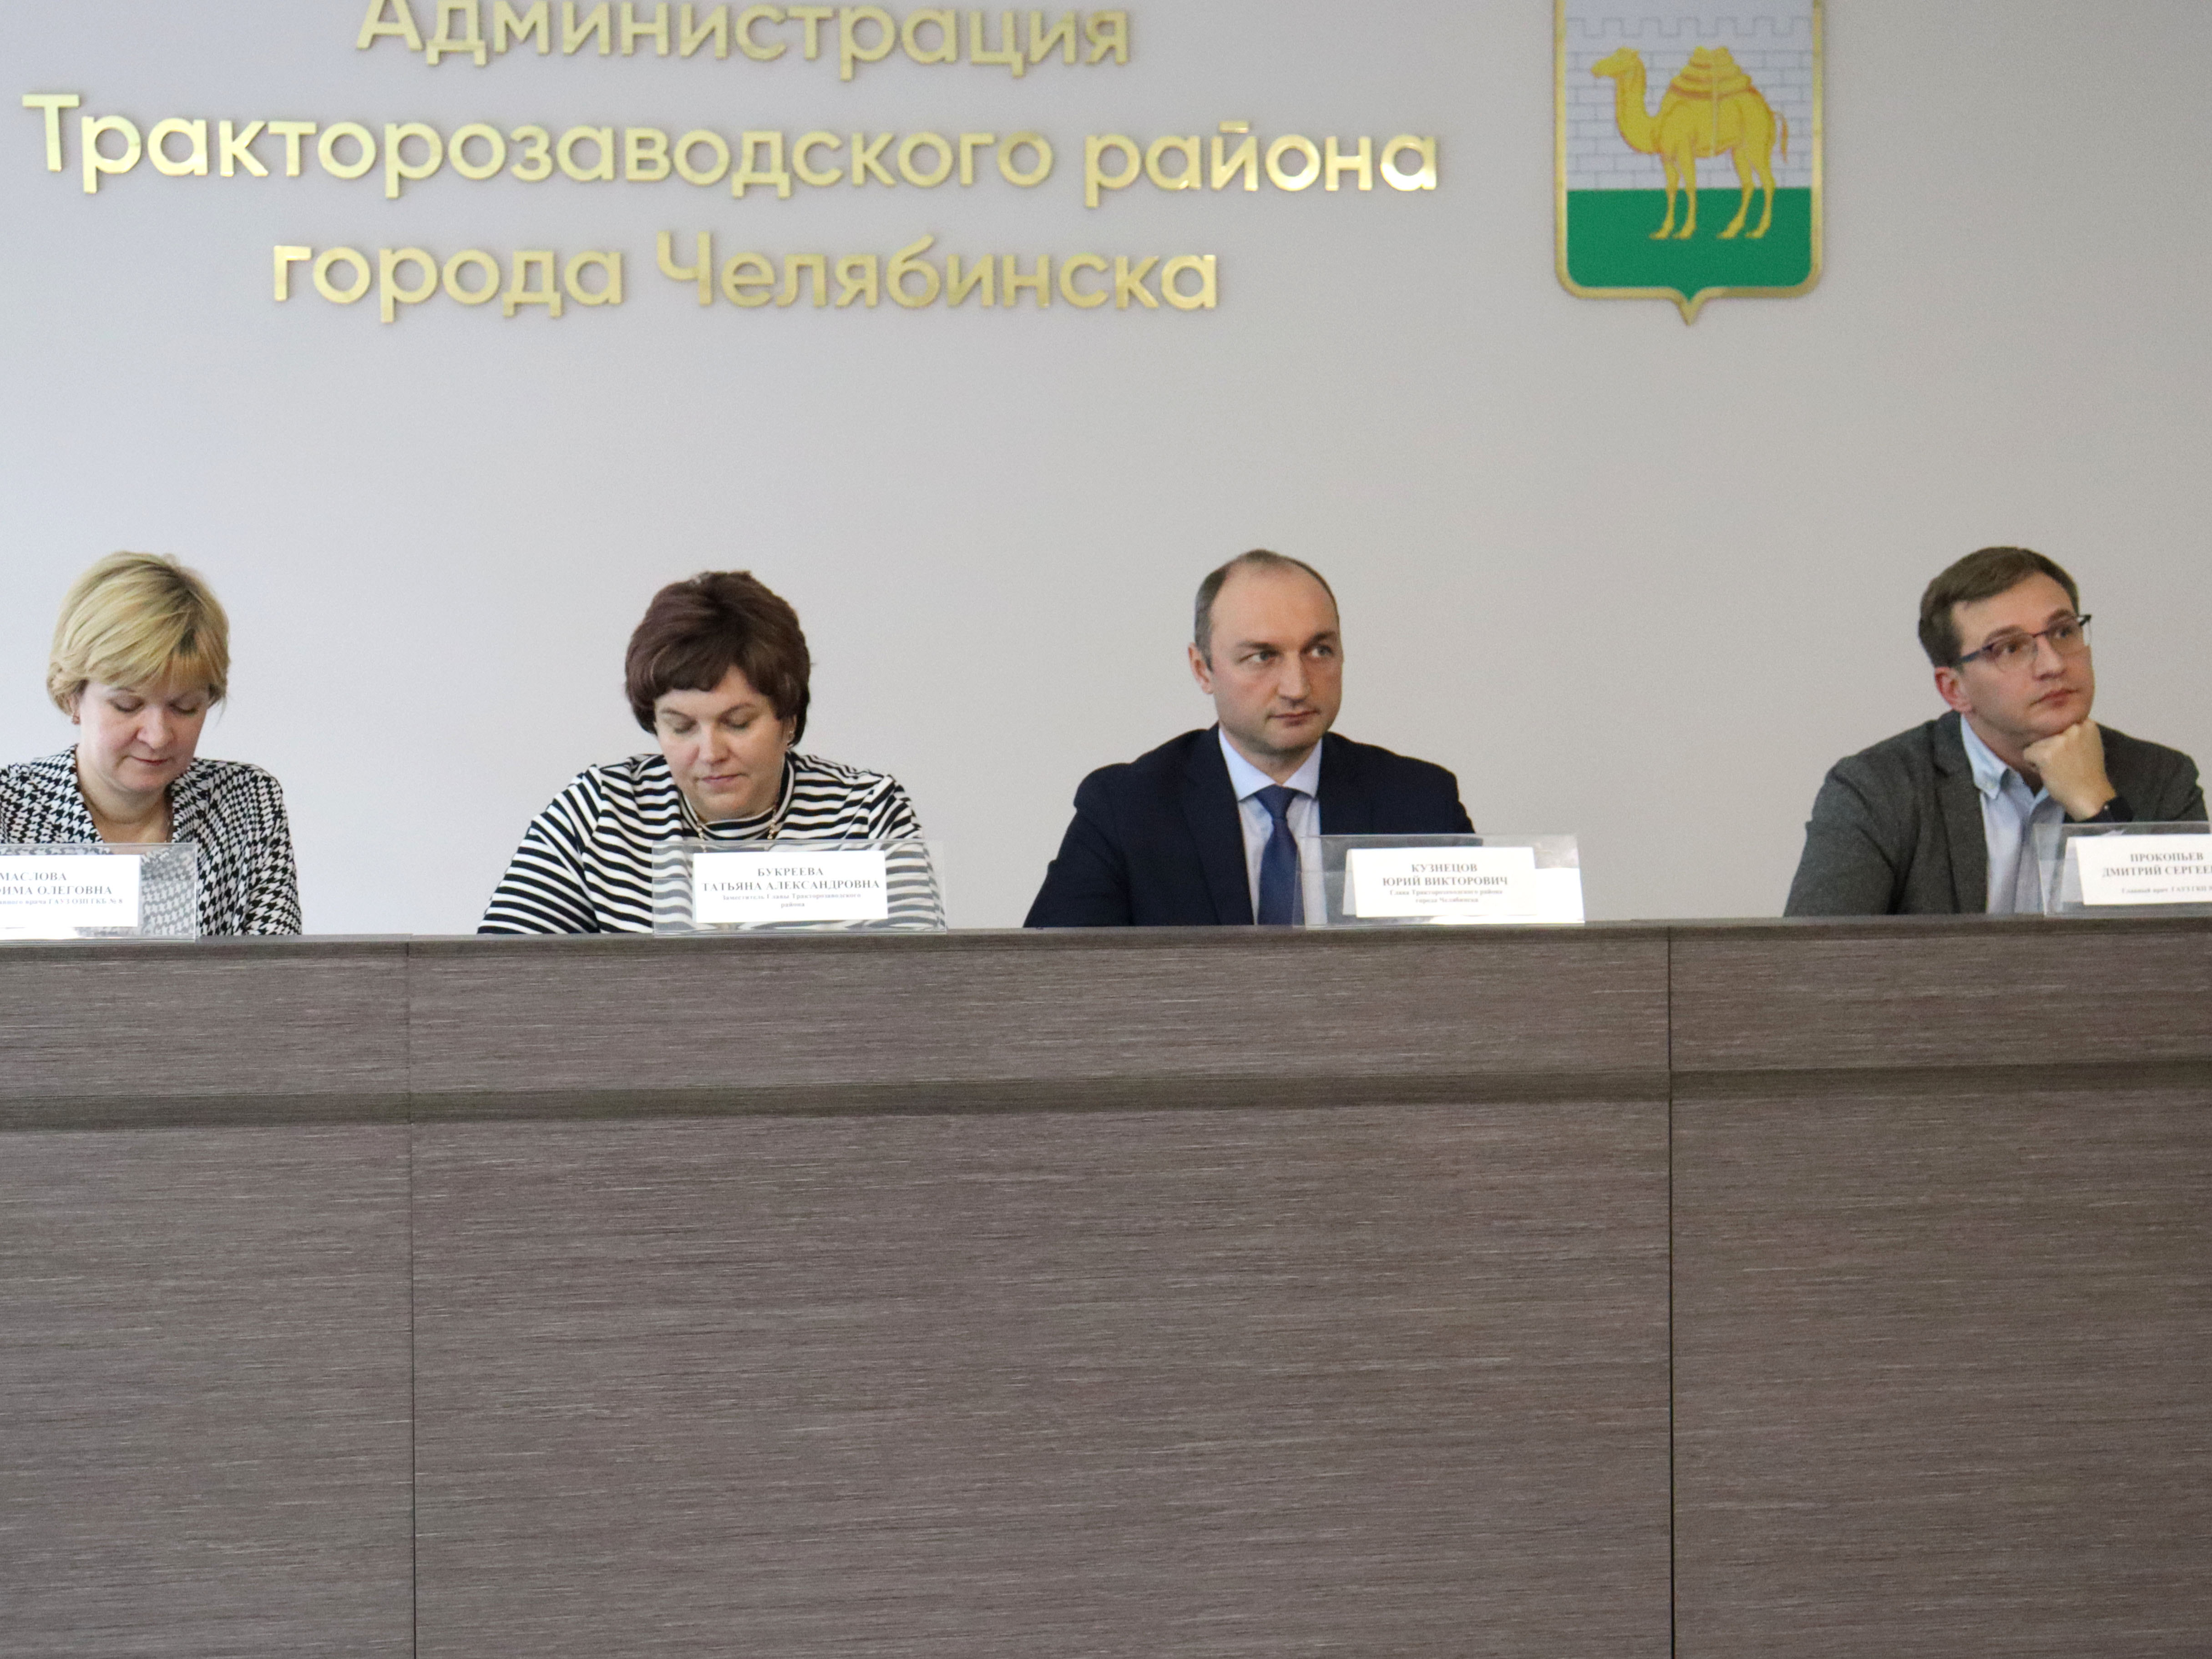 Глава района Юрий Кузнецов провел совещание с представителями сферы здравоохранения по вопросу диспансеризации